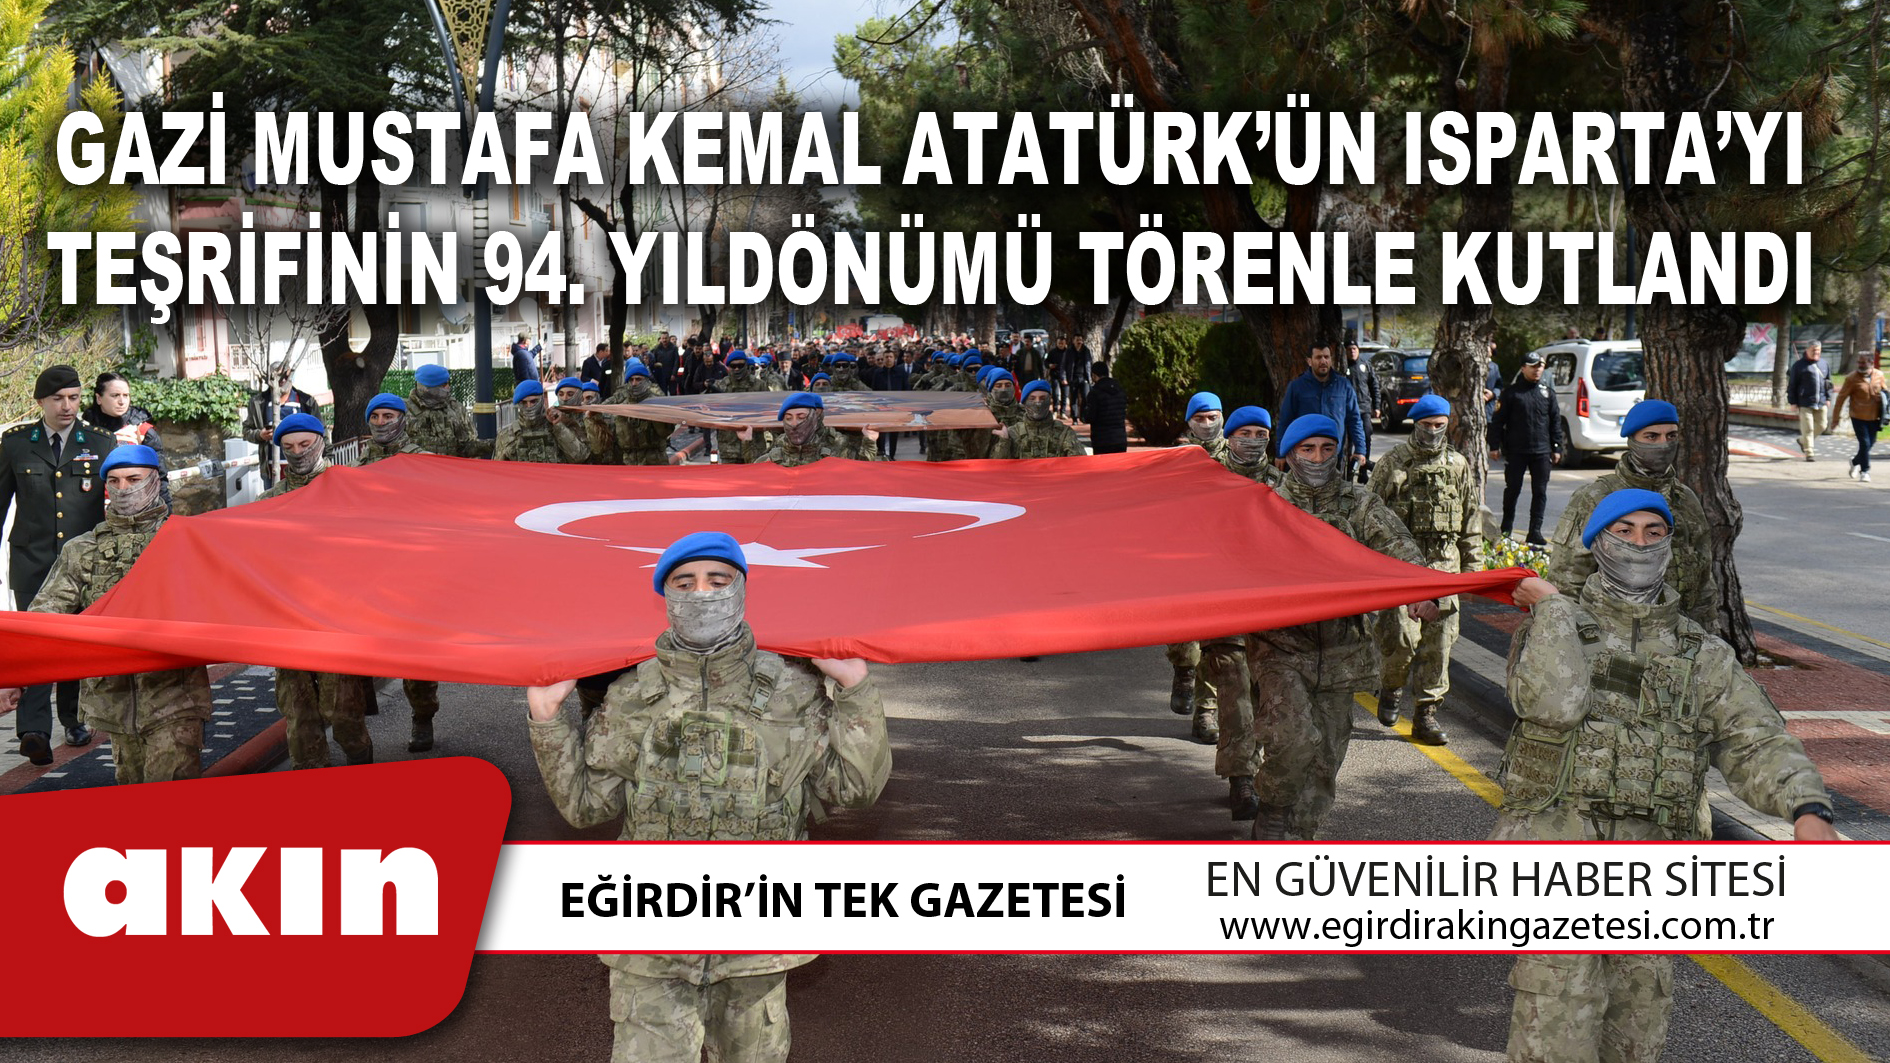 Gazi Mustafa Kemal Atatürk’ün Isparta’yı Teşrifinin 94. Yıldönümü Törenle Kutlandı